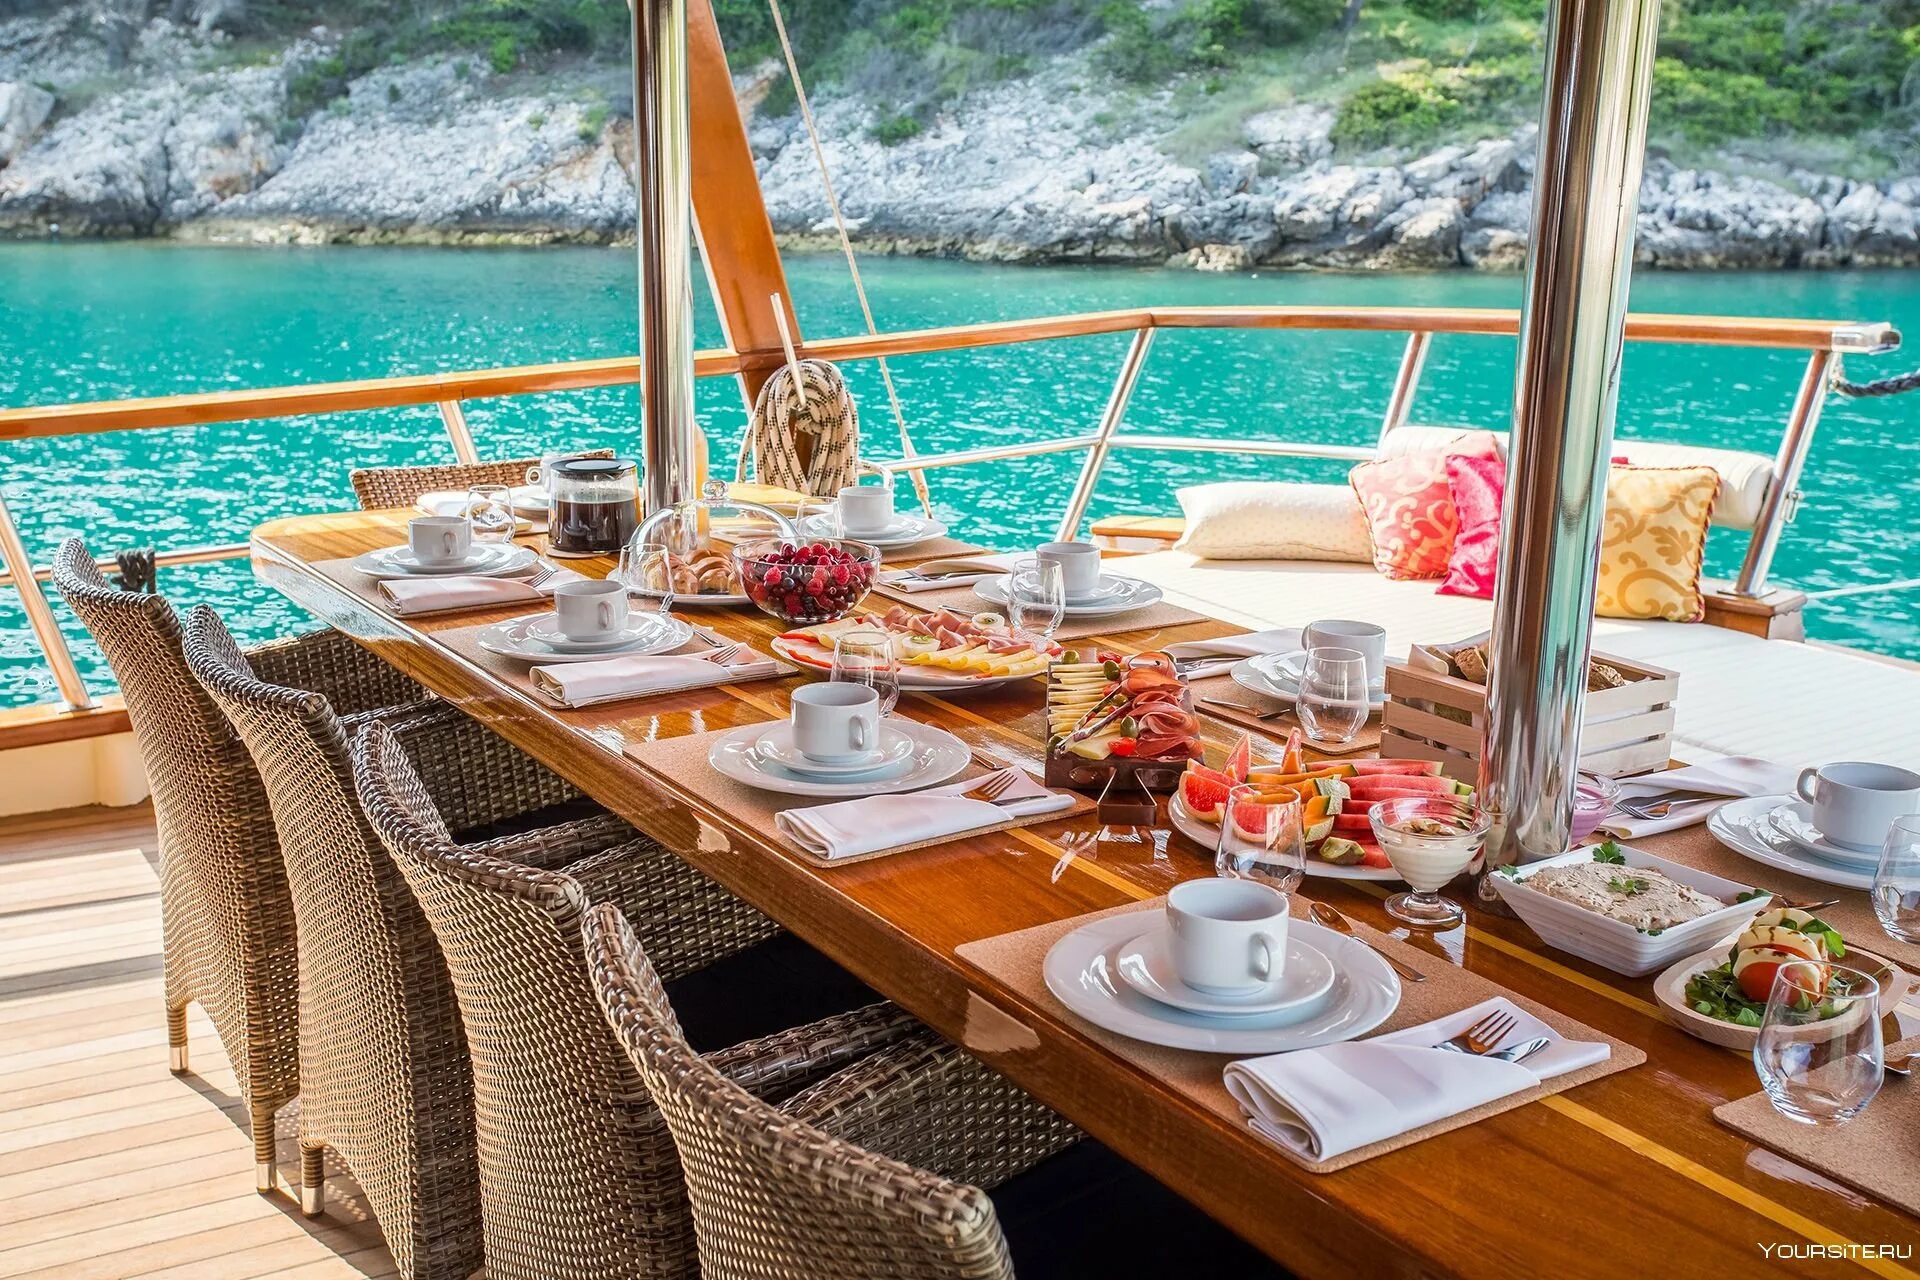 Утро палуба. Роскошный завтрак на яхте. Завтрак у моря. Обед на яхте. Завтрак с видом на море.